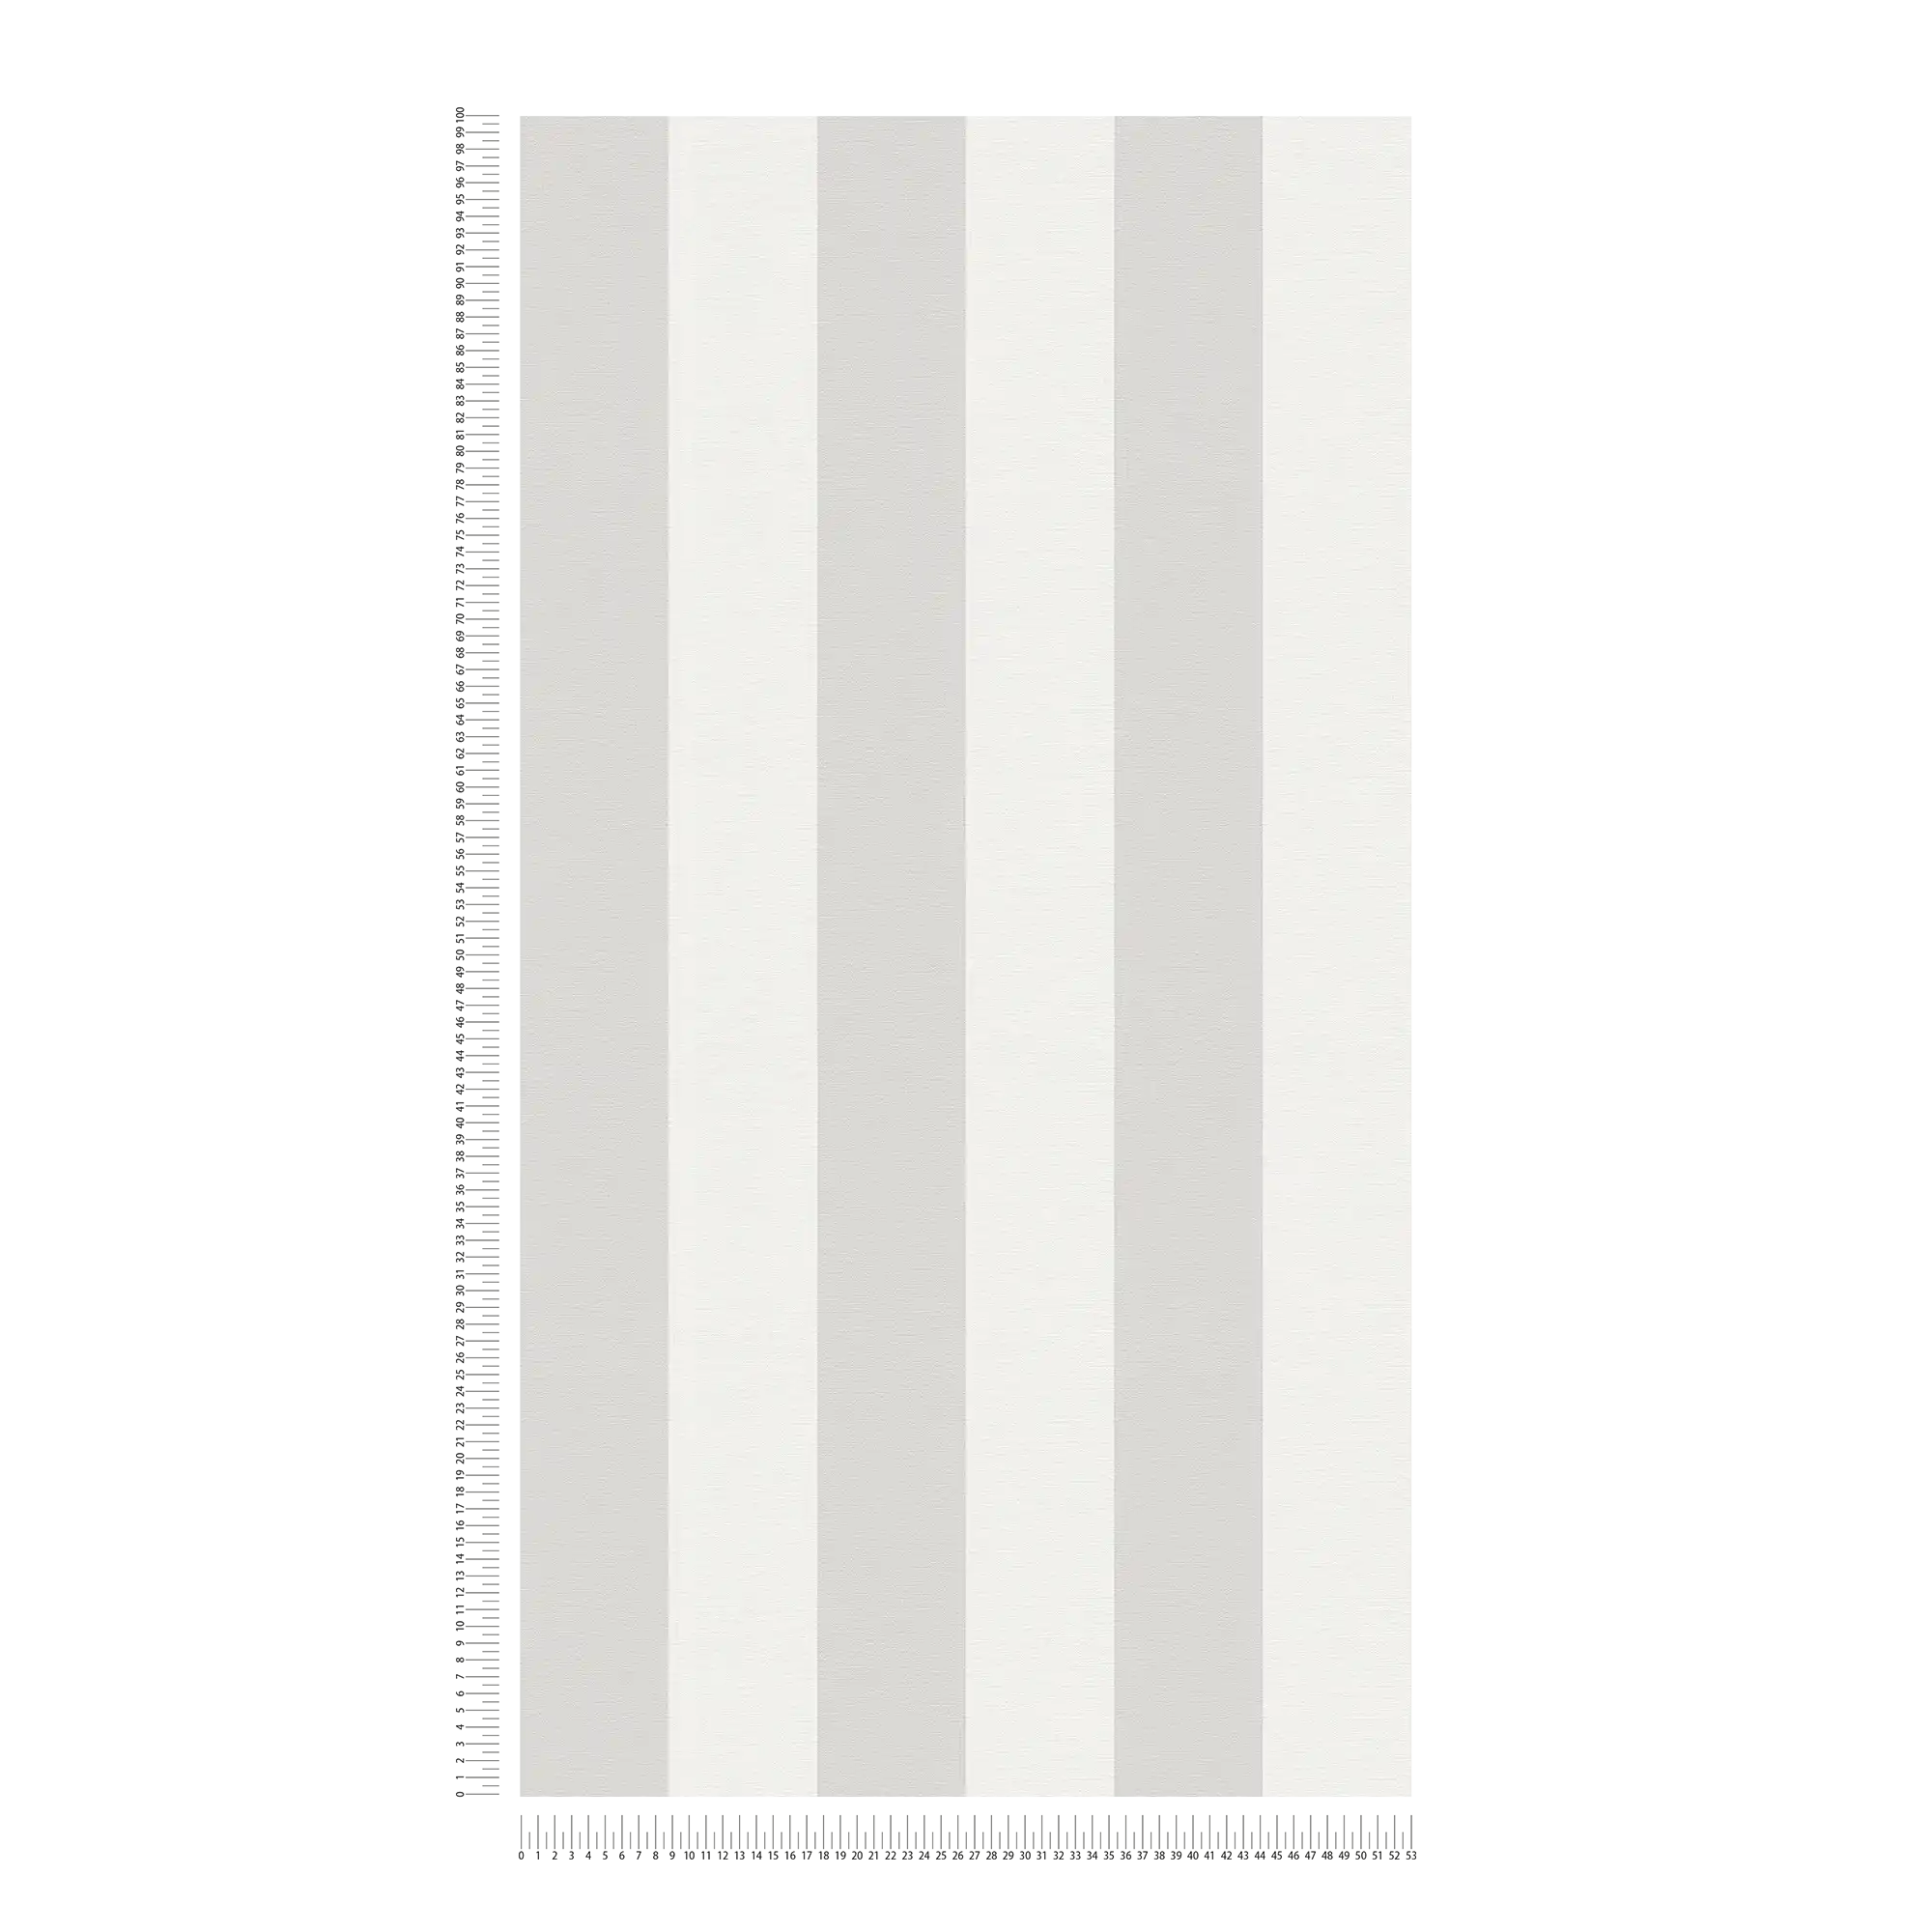             Papel pintado de rayas en bloque con aspecto textil para un diseño joven - gris, blanco
        